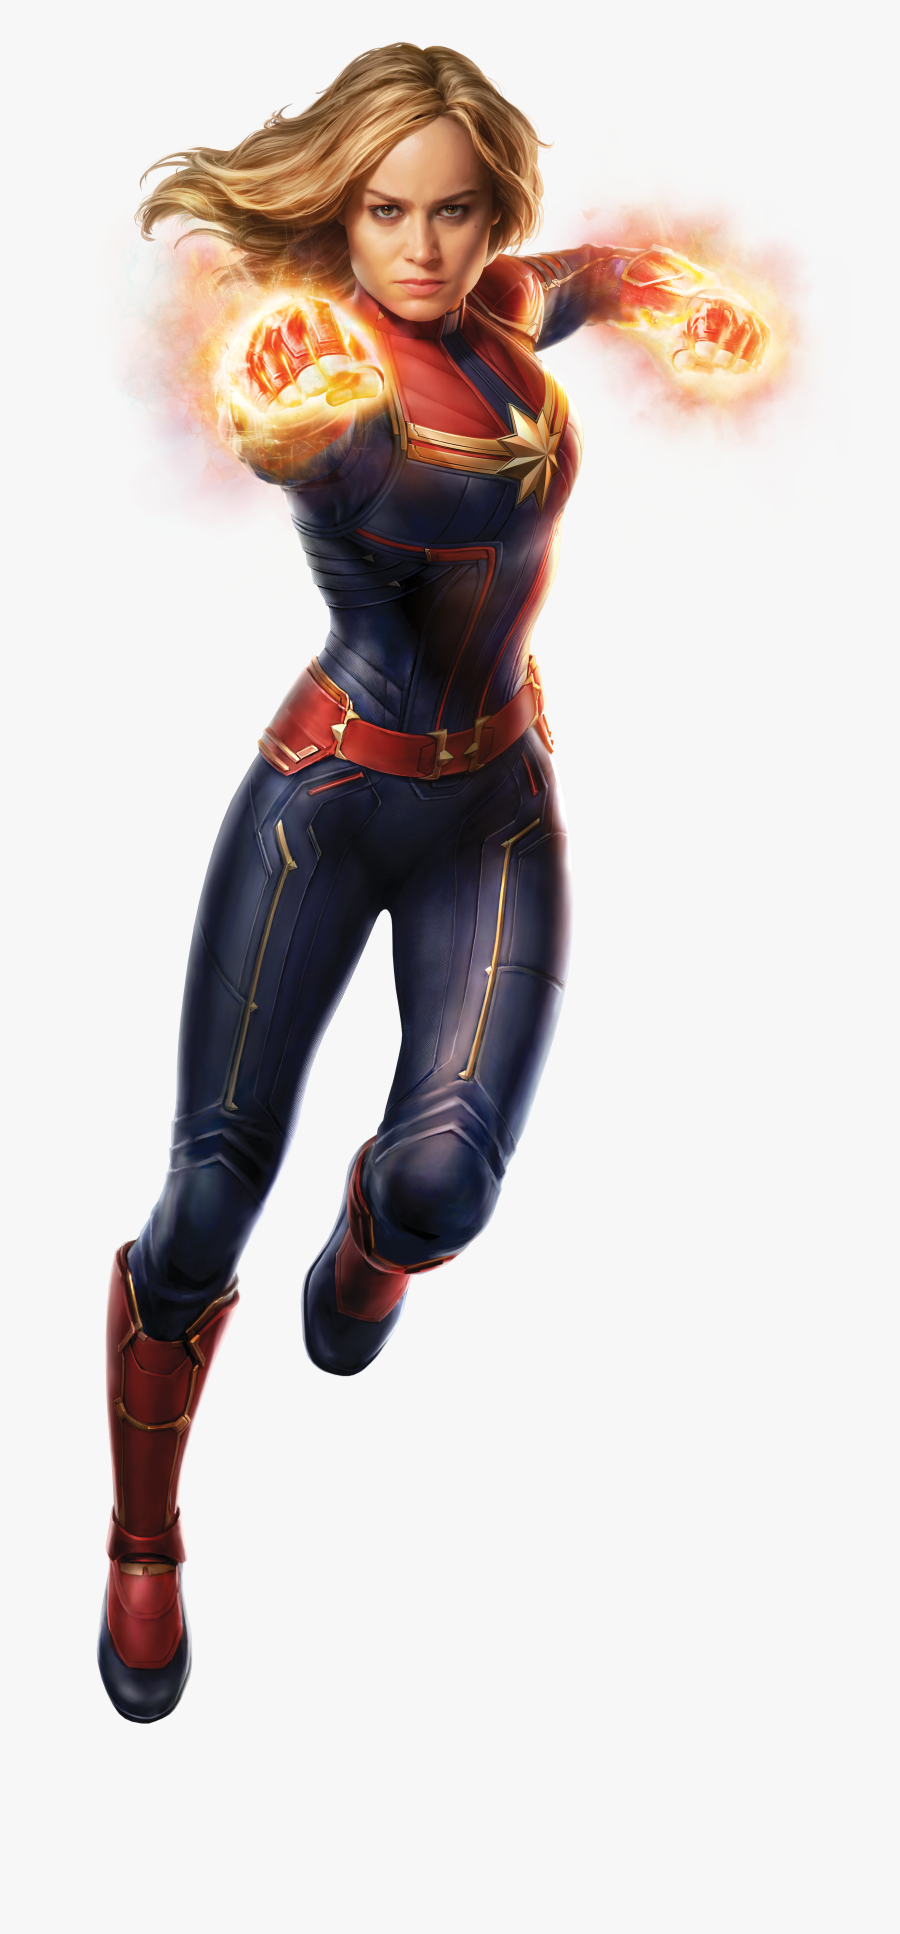 Captain Marvel Png, Transparent Clipart